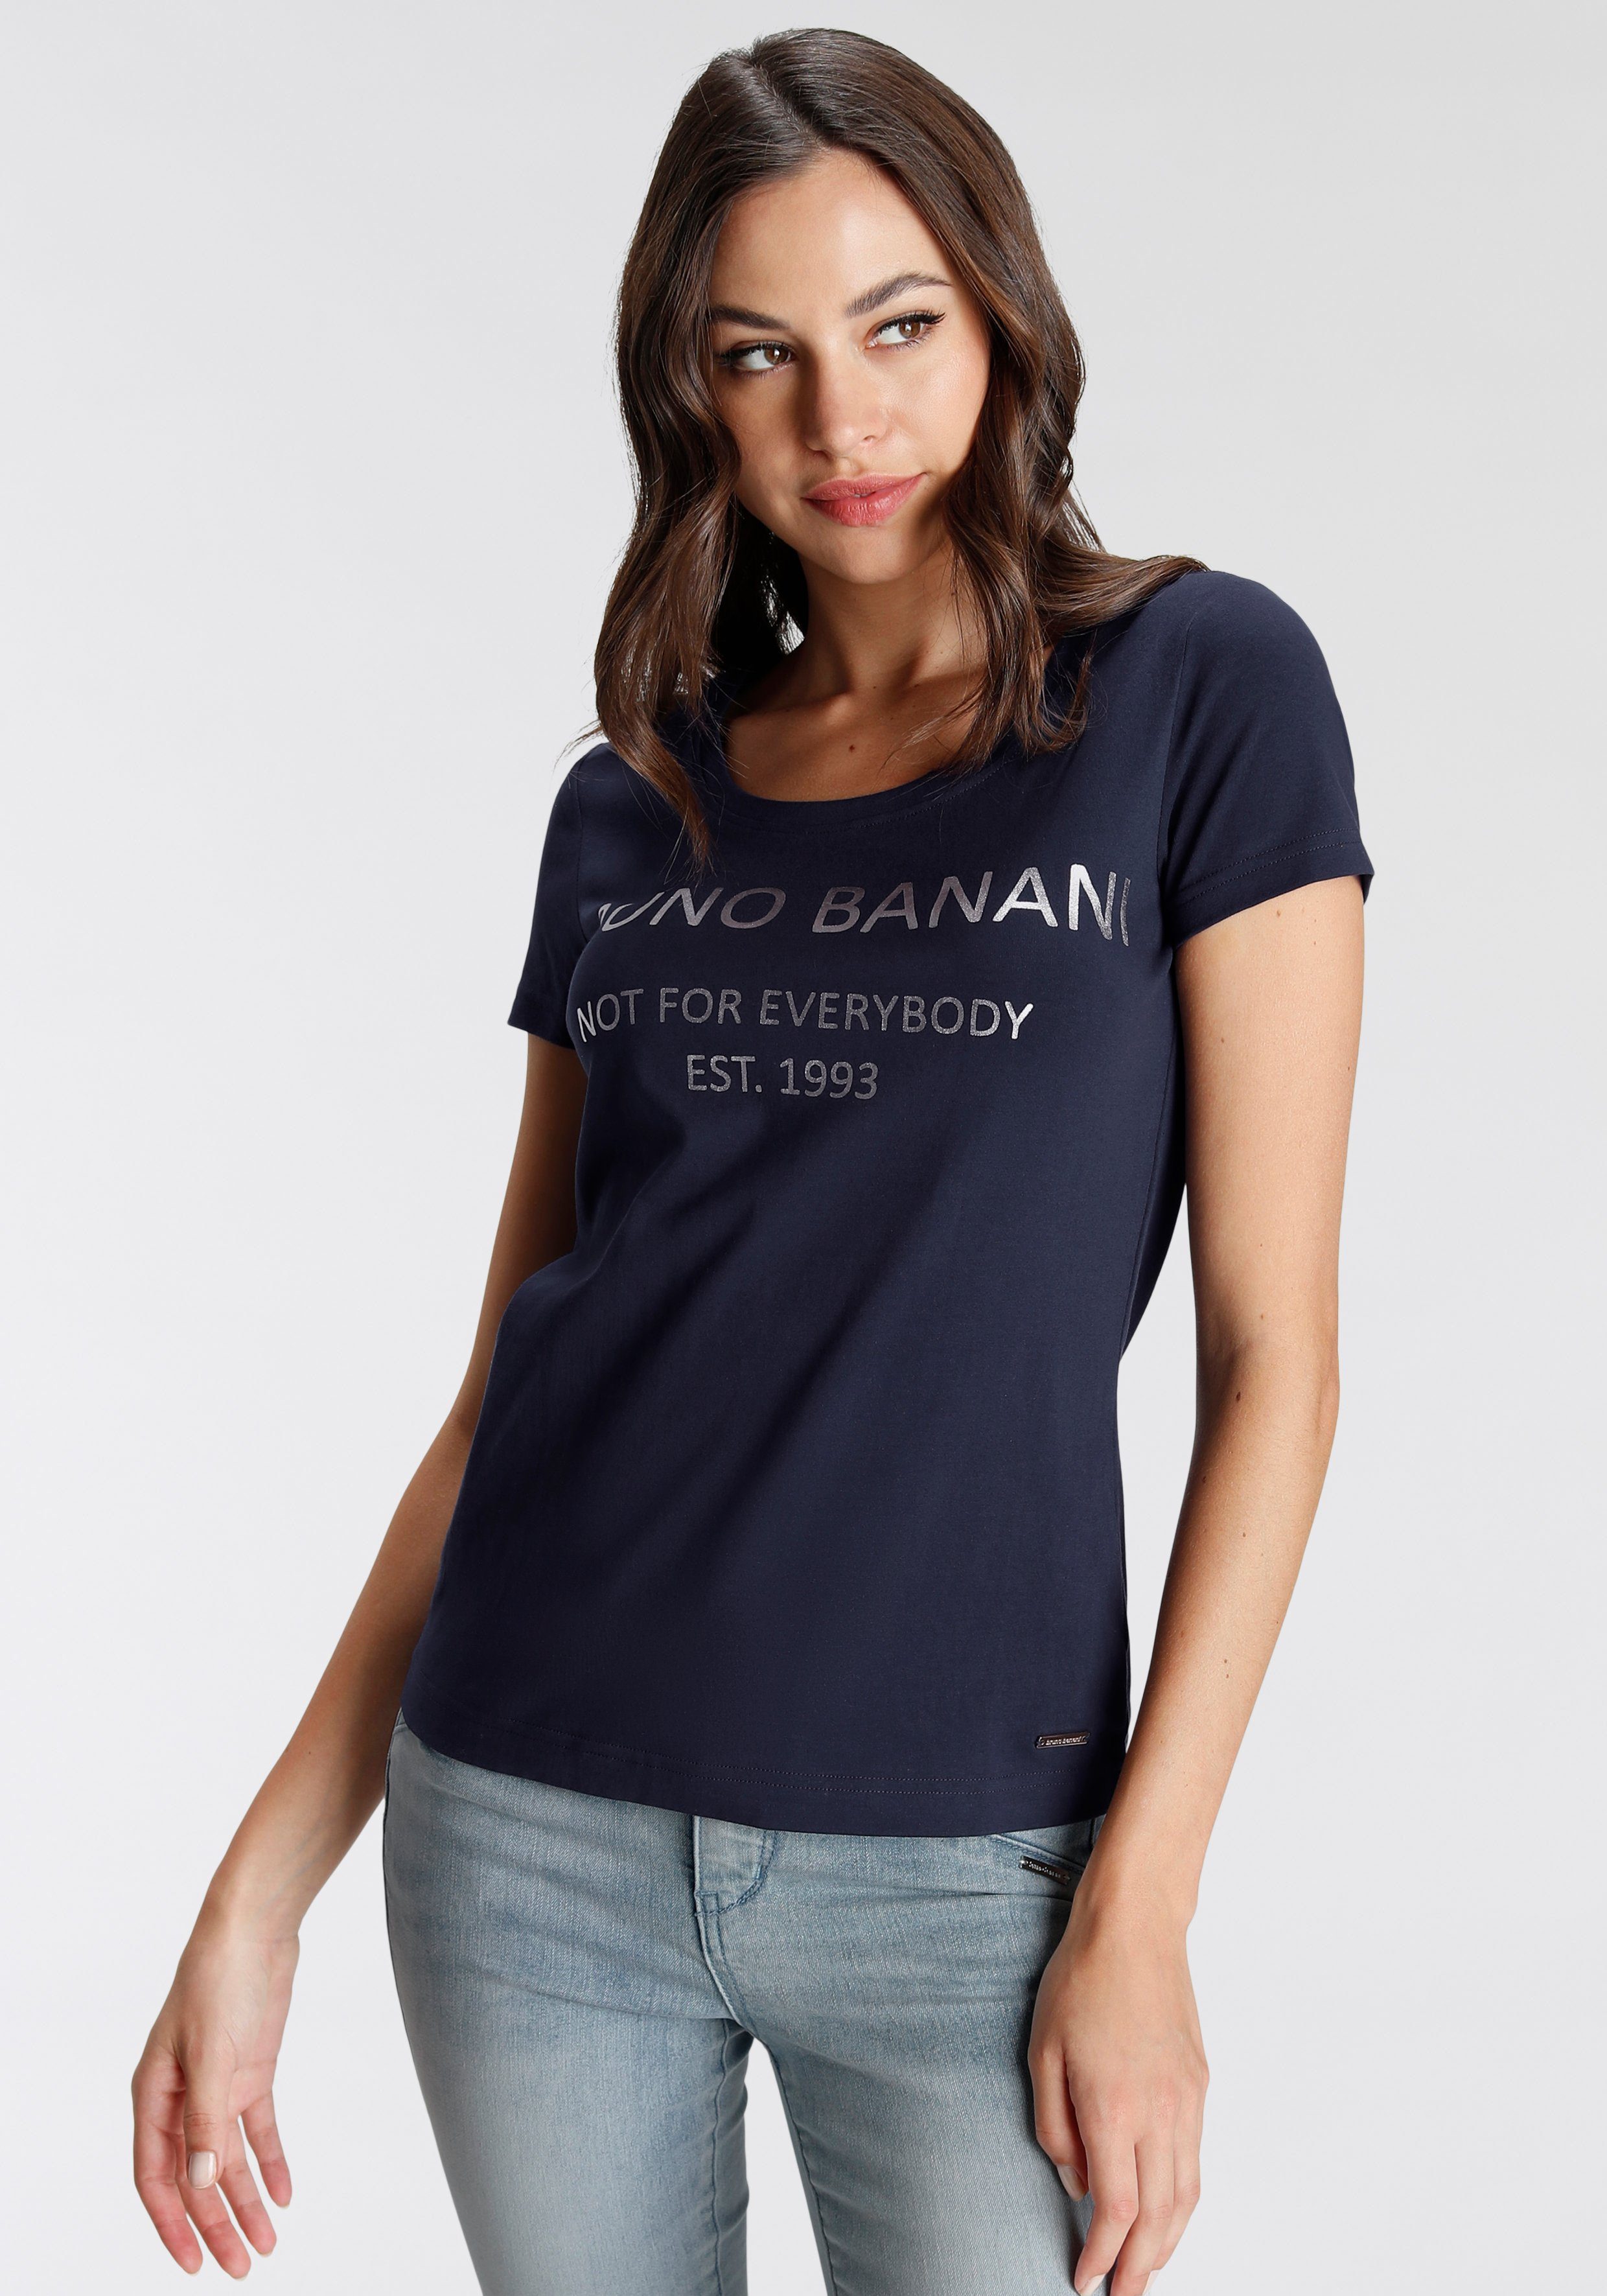 mit T-Shirt Logodruck NEUE marine Bruno KOLLEKTION goldfarbenem Banani